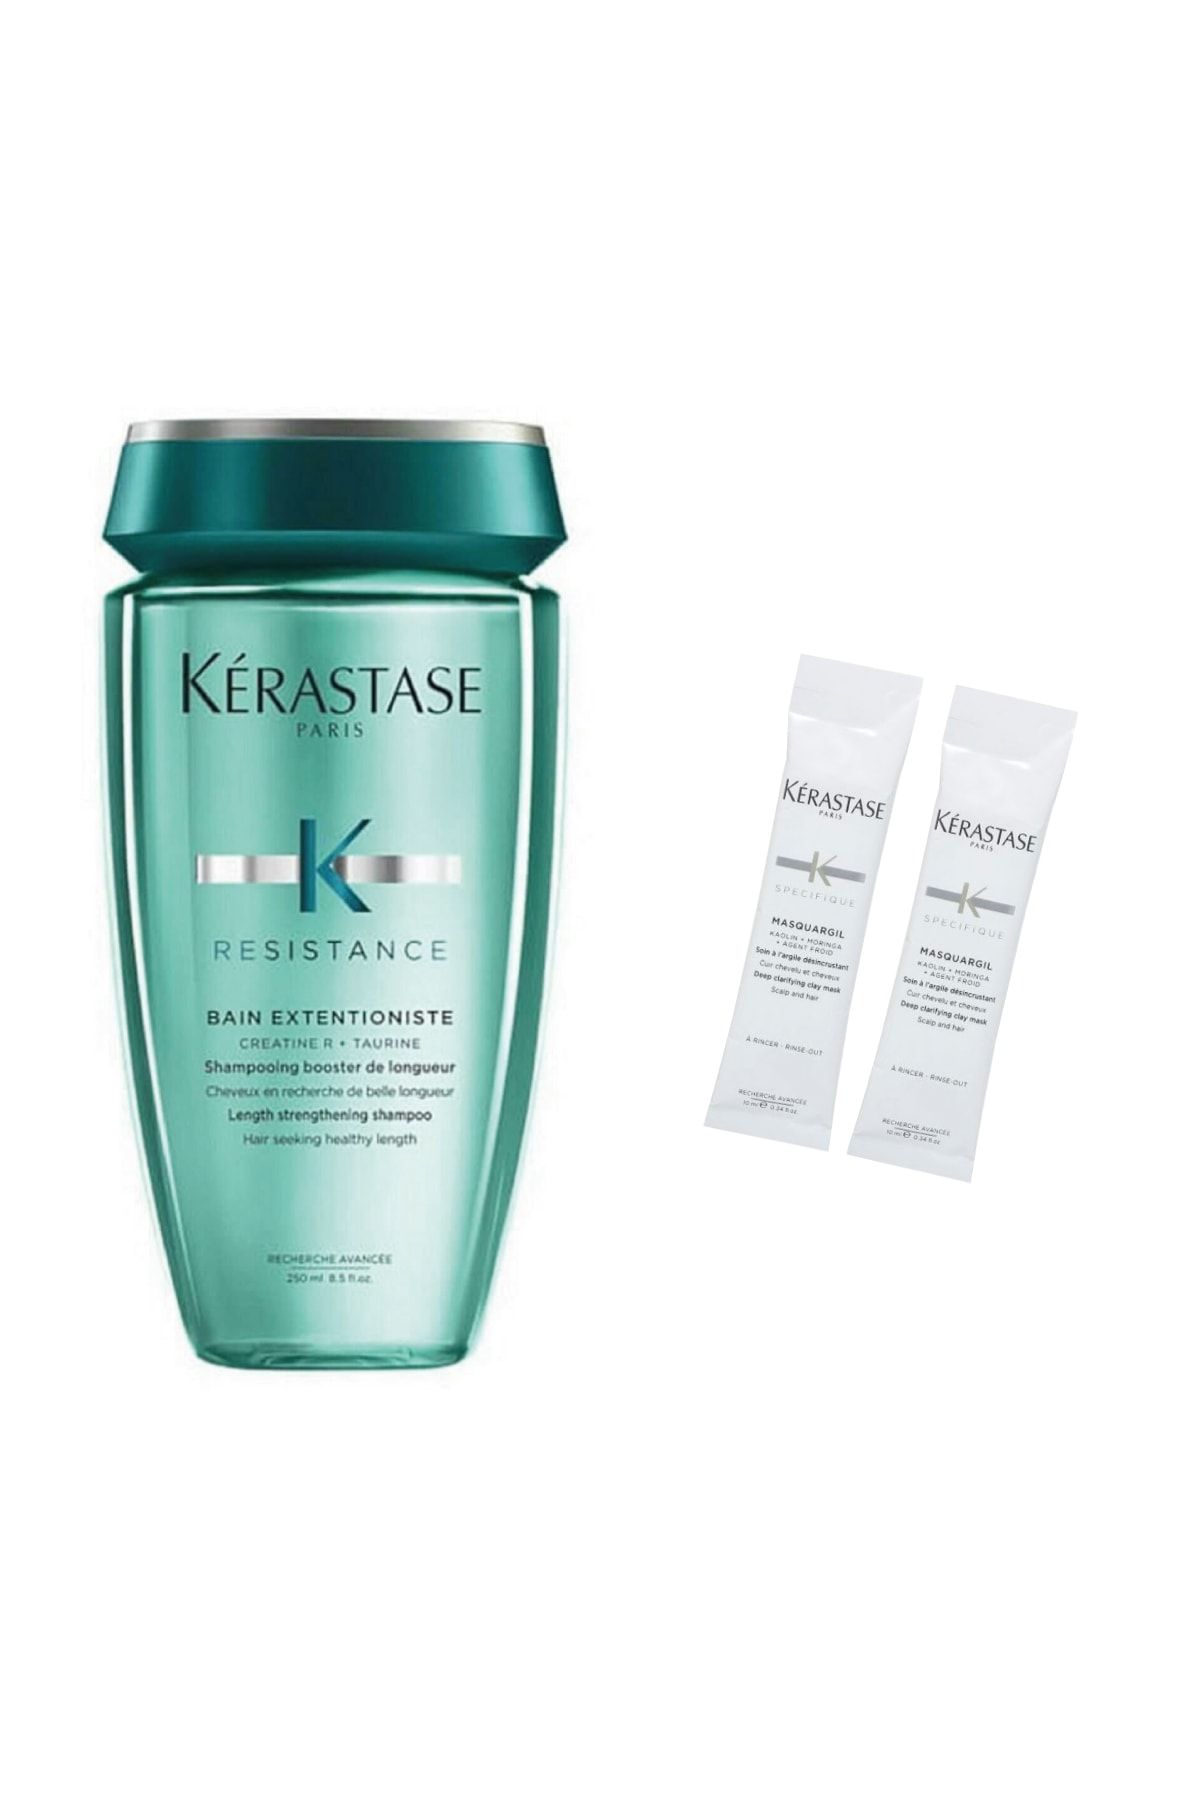 Kerastase Extentioniste Canlancırıcı Şampuan 250 ml + Saç Banyosu Öncesi Kil Maskesi 2 x 10 ml